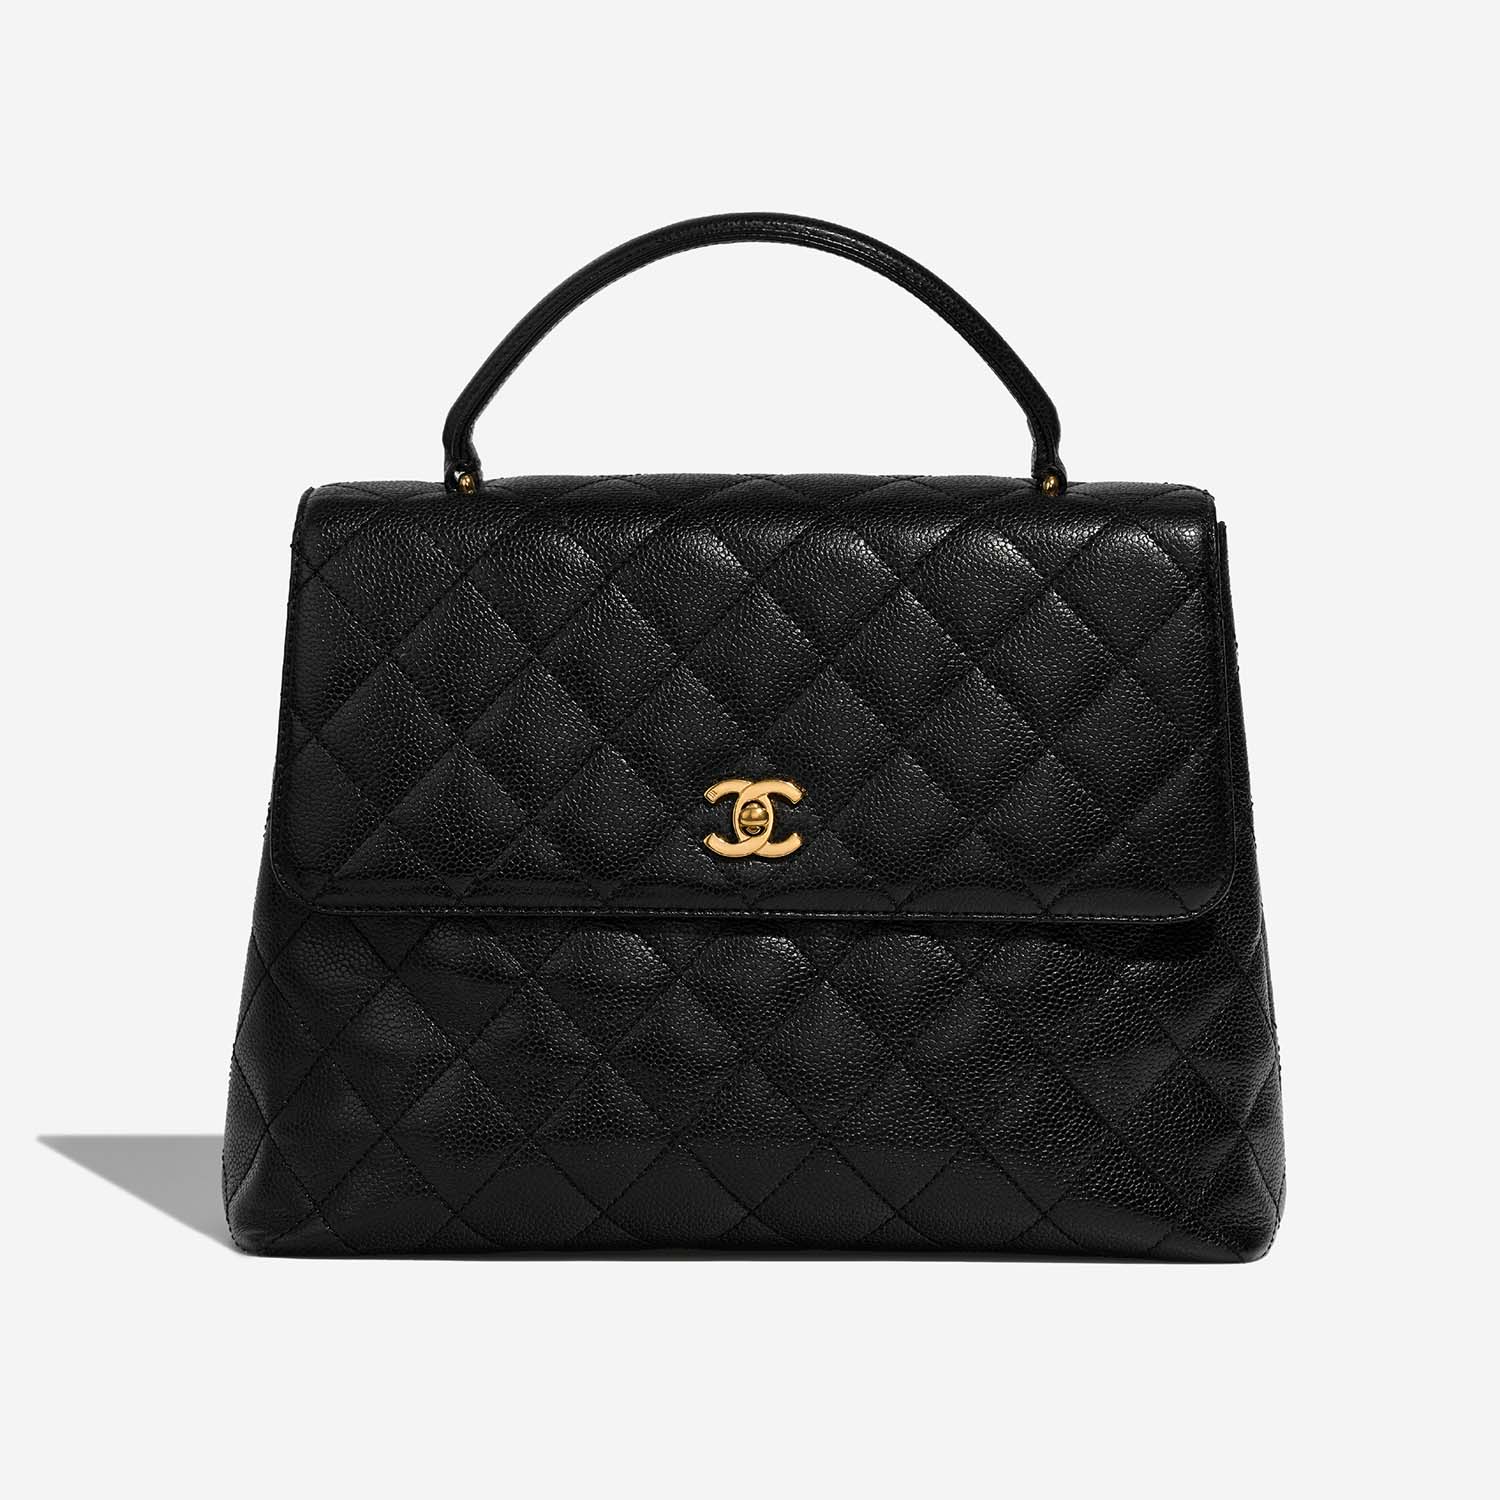 Chanel TimelessHandle Large Black Front | Verkaufen Sie Ihre Designer-Tasche auf Saclab.com